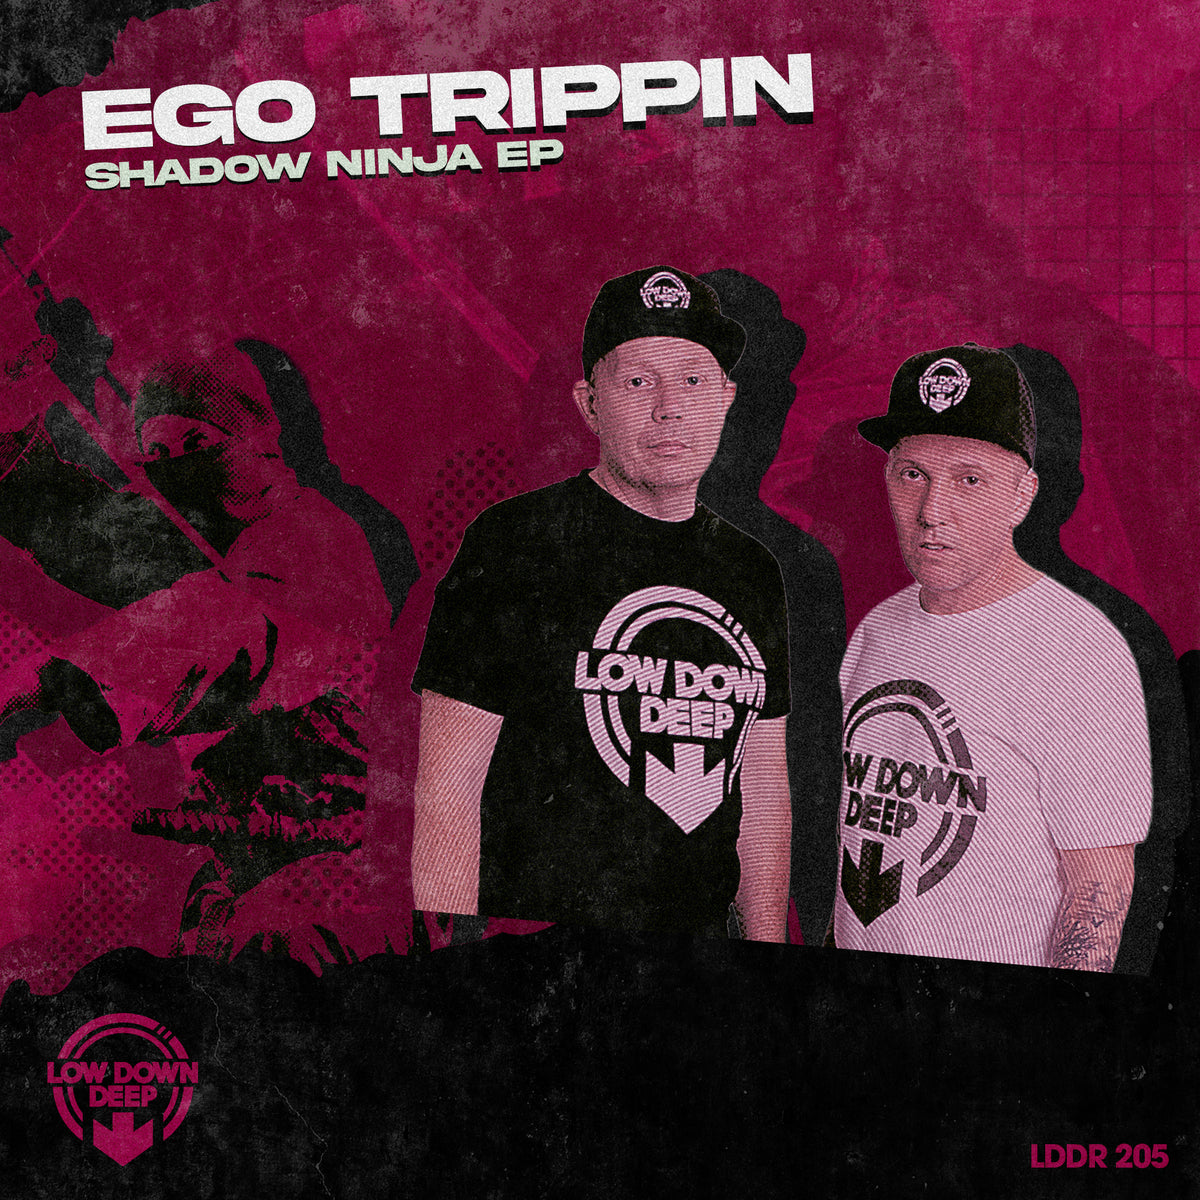 LDD 205 - Ego Trippin 'Shadow Ninja EP'